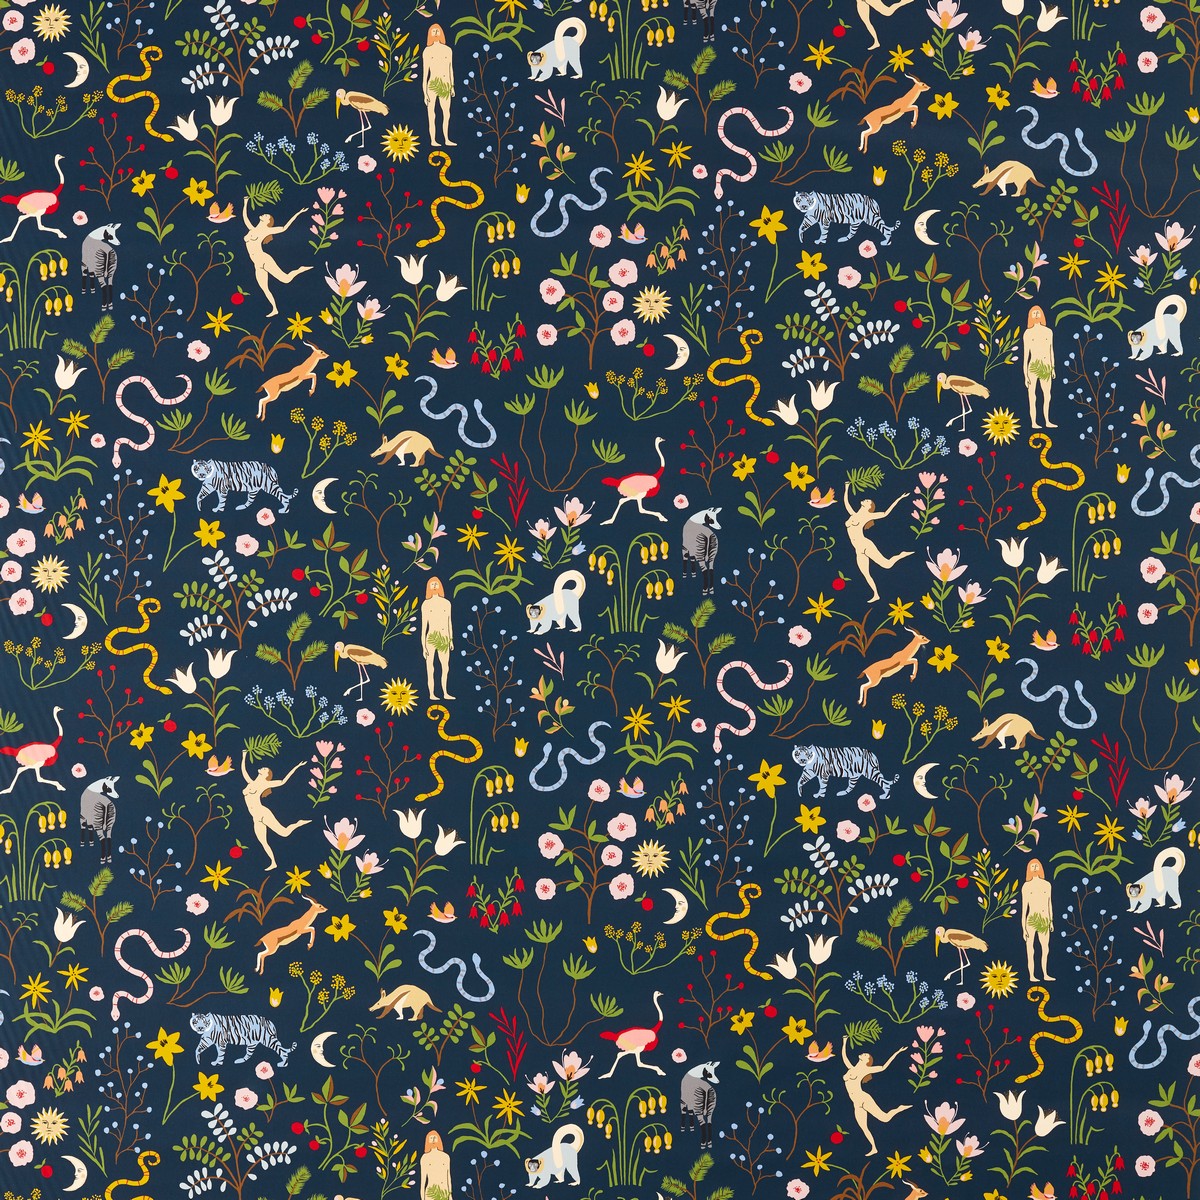 Garden Of Eden Midnight Fabric by Scion